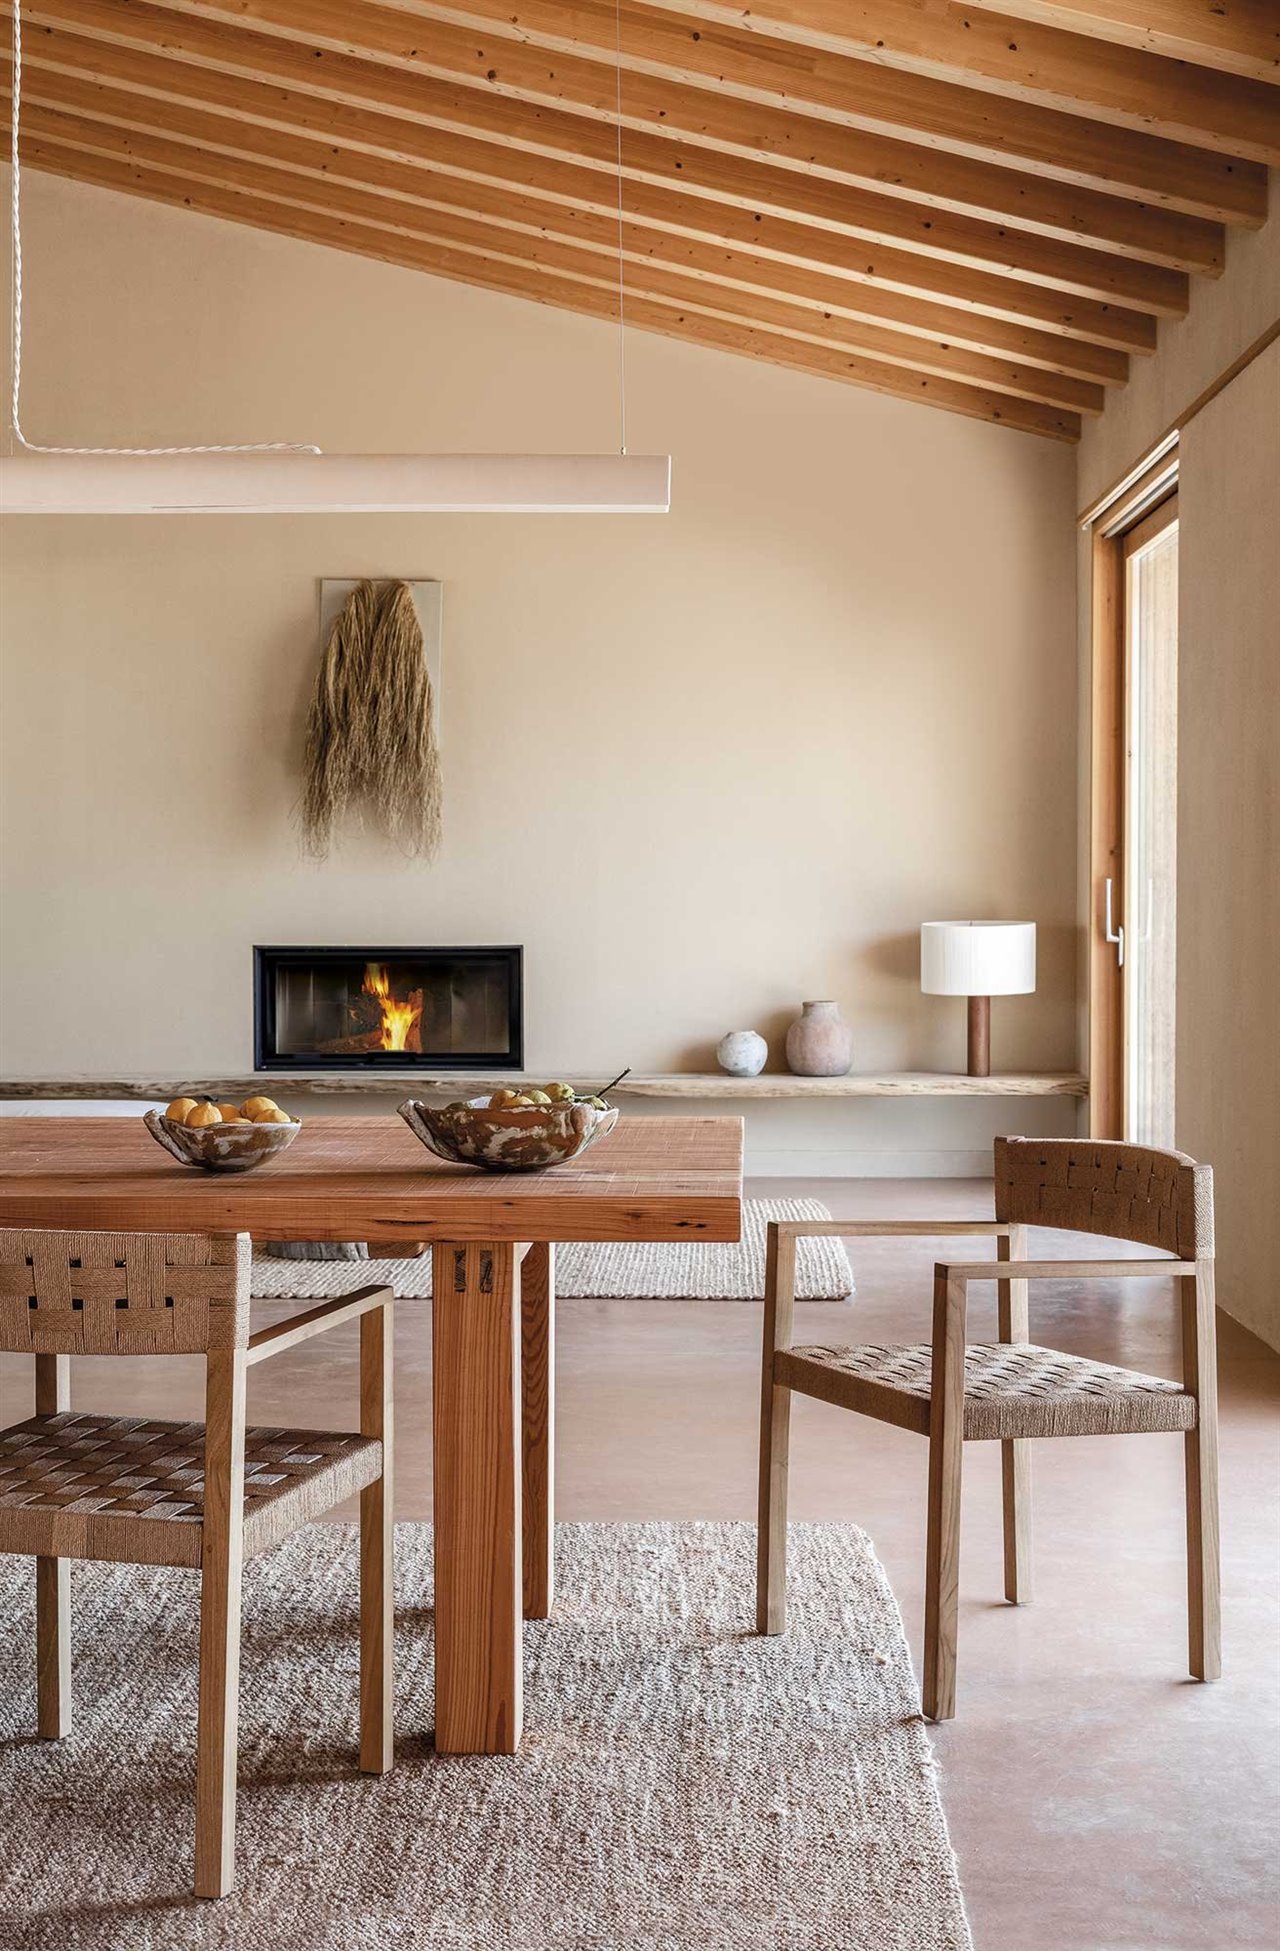 El call vermell, el suelo arcilloso rojizo típico de Mallorca, da forma a esta casa del estudio Munarq con una filosofía totalmente sostenible que evoca el paisaje rural.